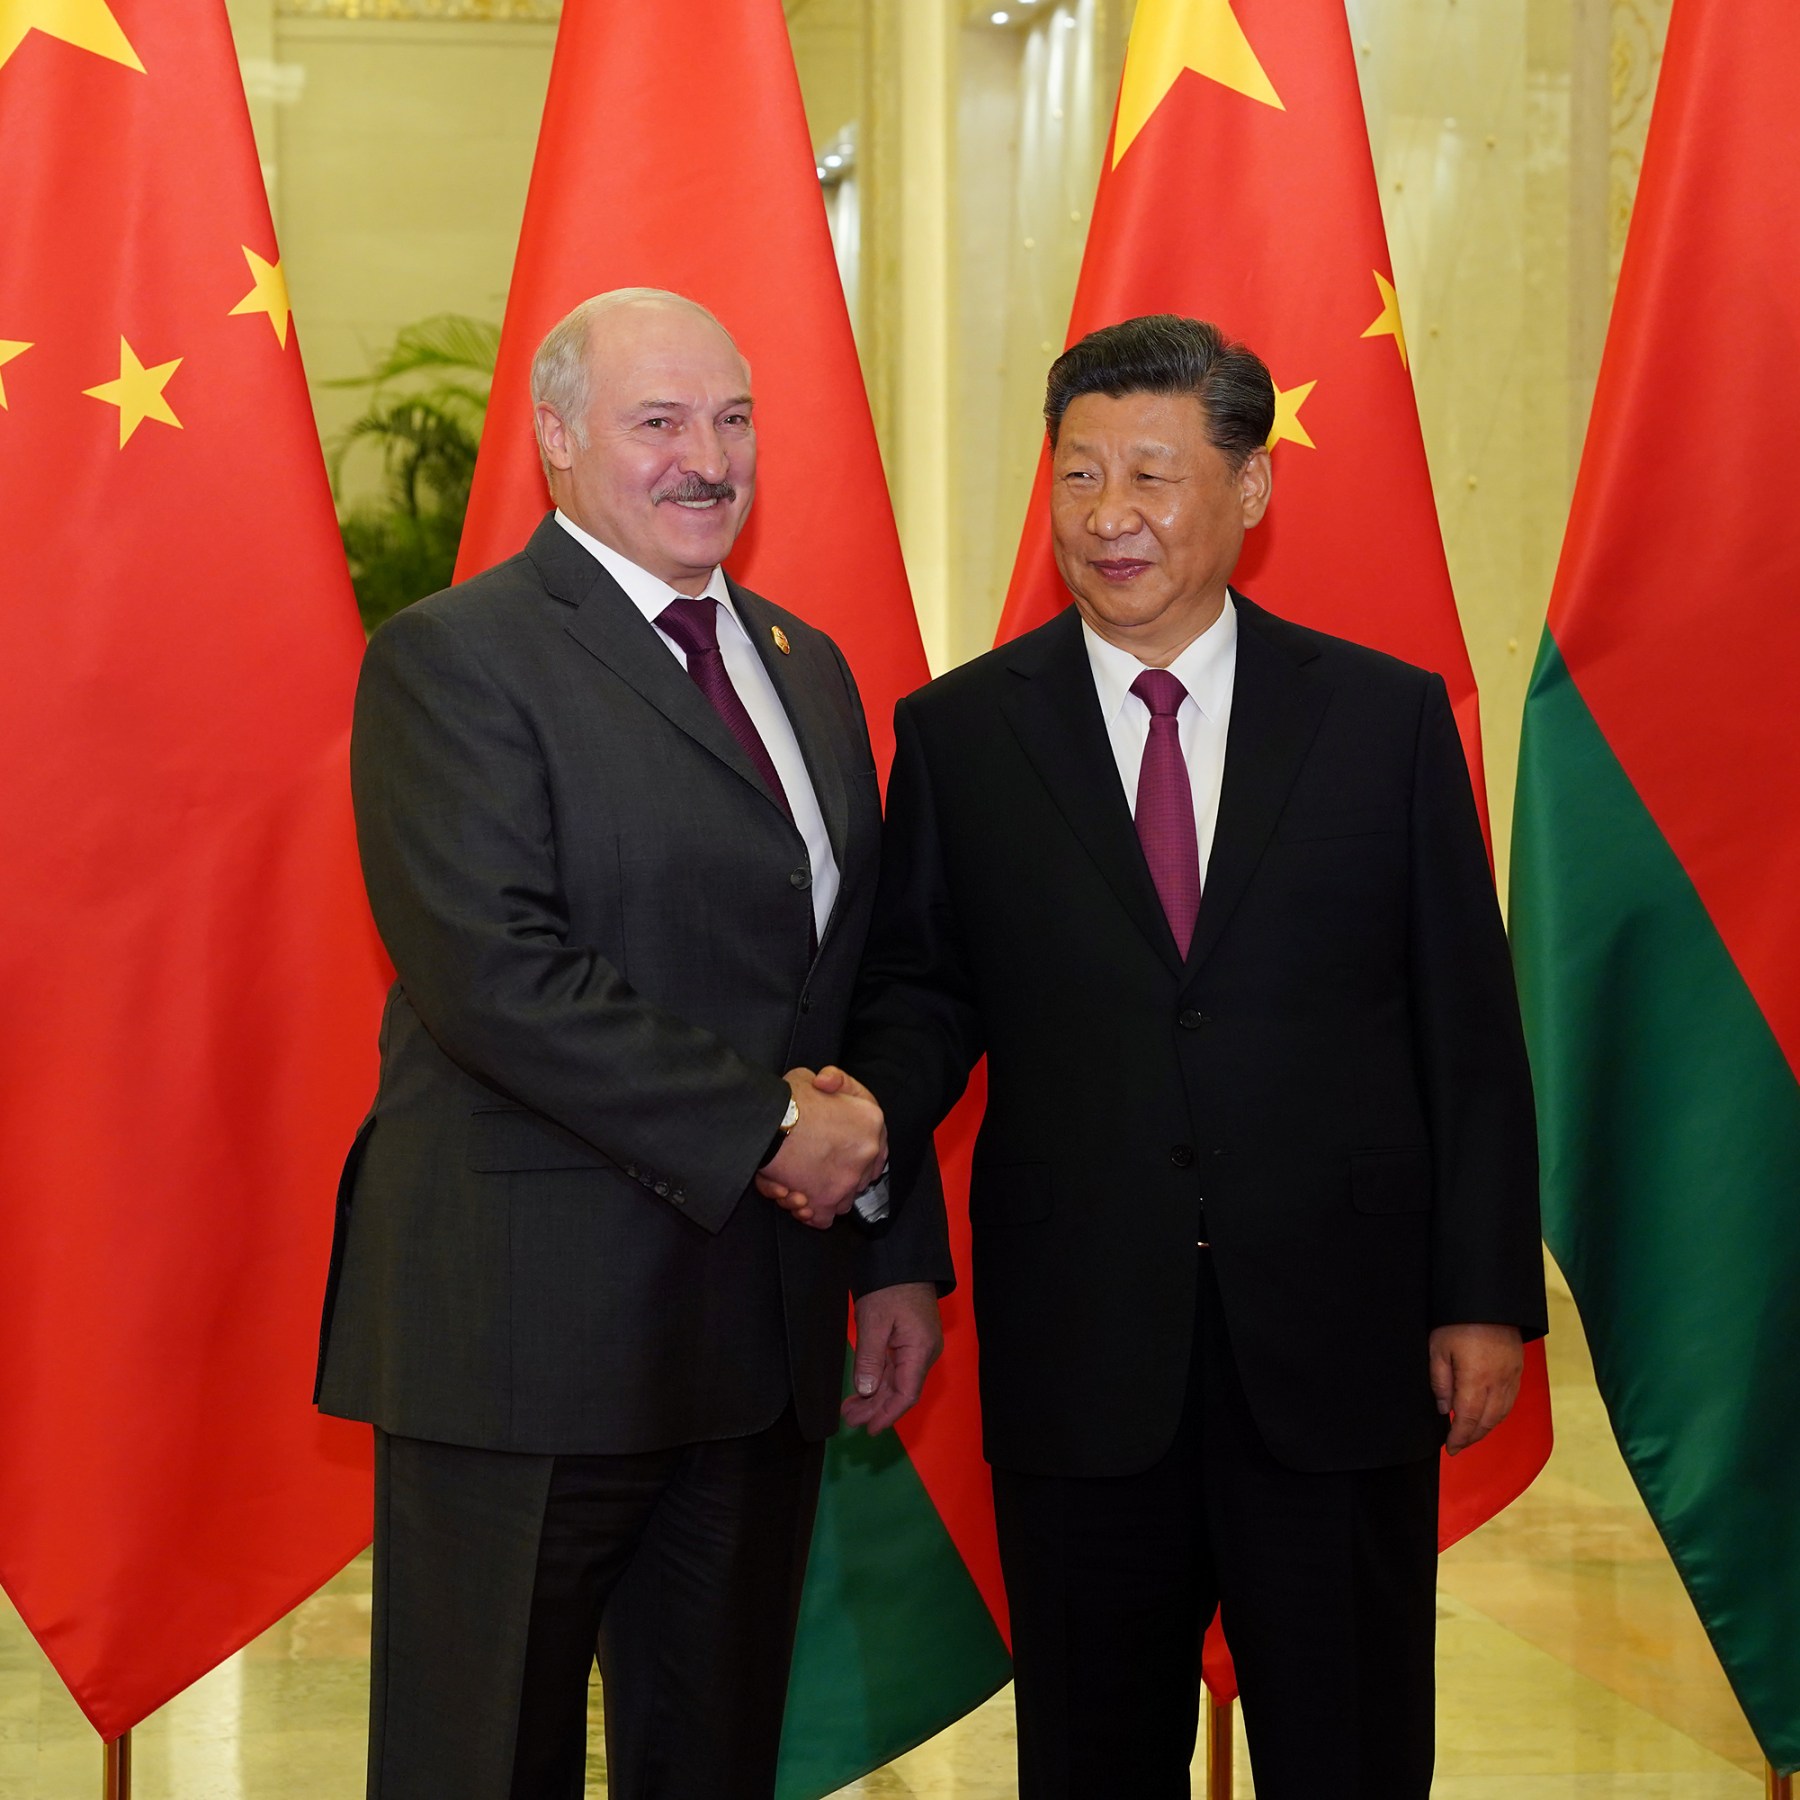 Belarus President Lukashenko to visit China next week | News | Al Jazeera